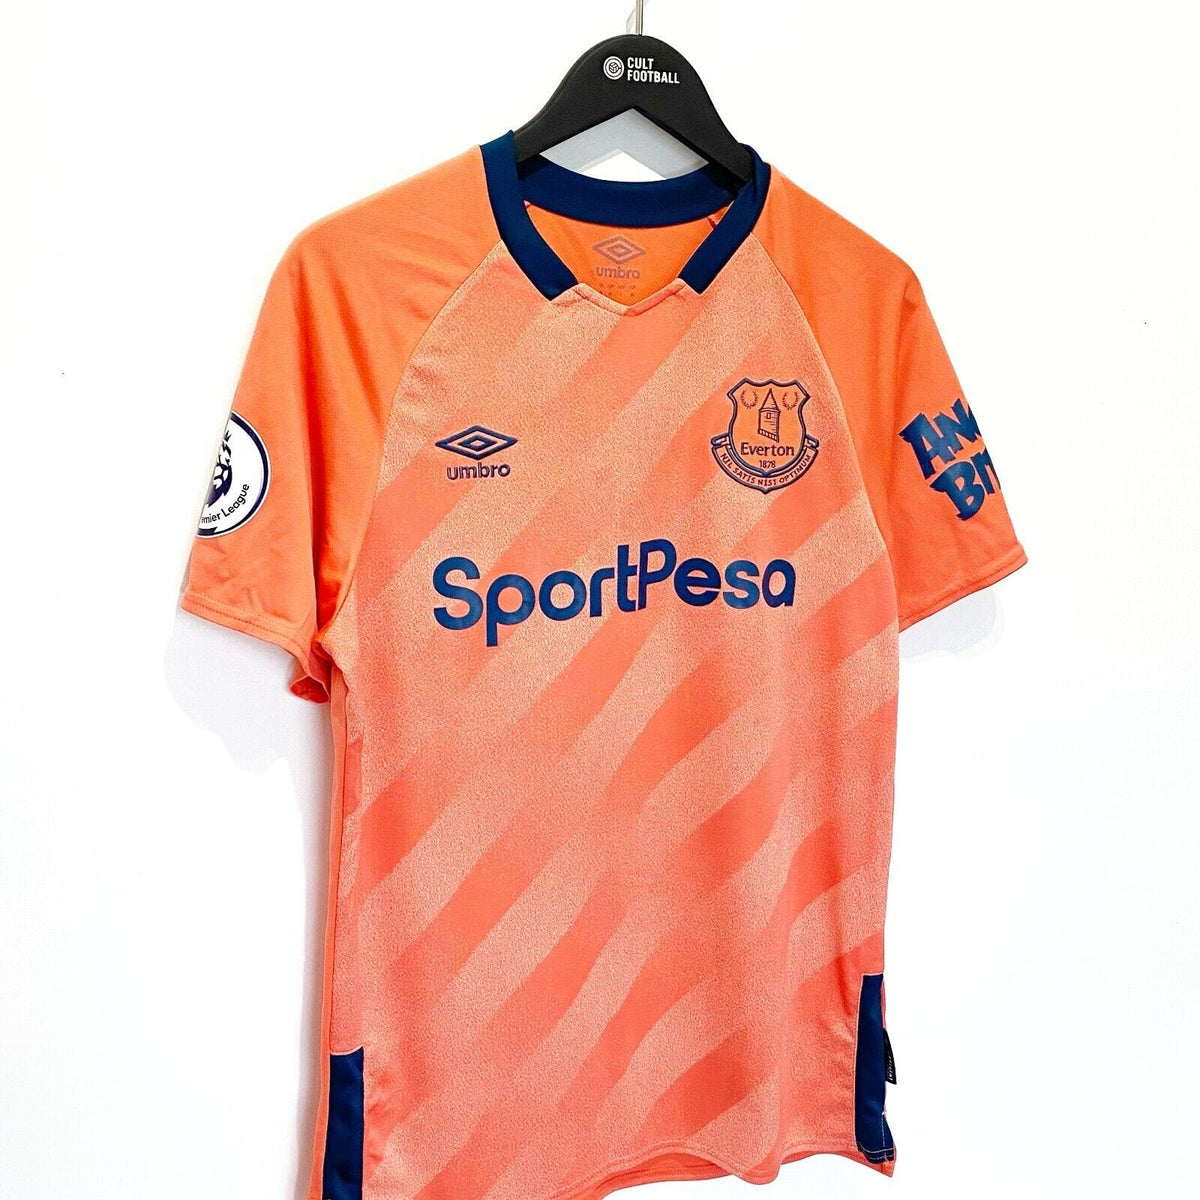 Everton 2019/20 Umbro Away Kit - FOOTBALL FASHION